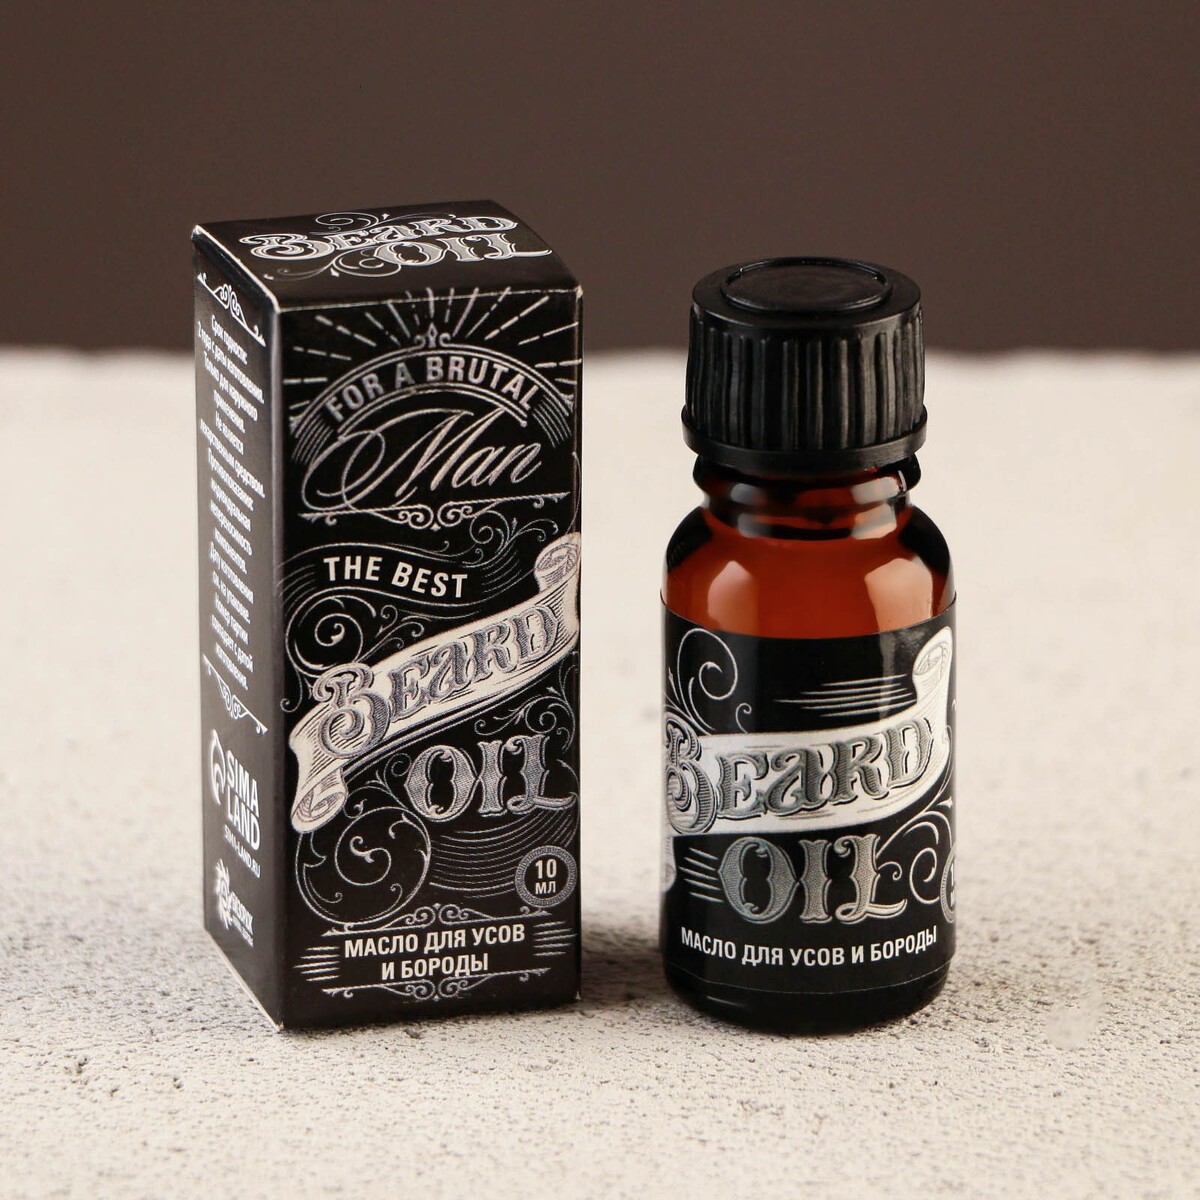 Масло для усов и бороды beard oil, 10 мл косметическое масло для бороды и усов